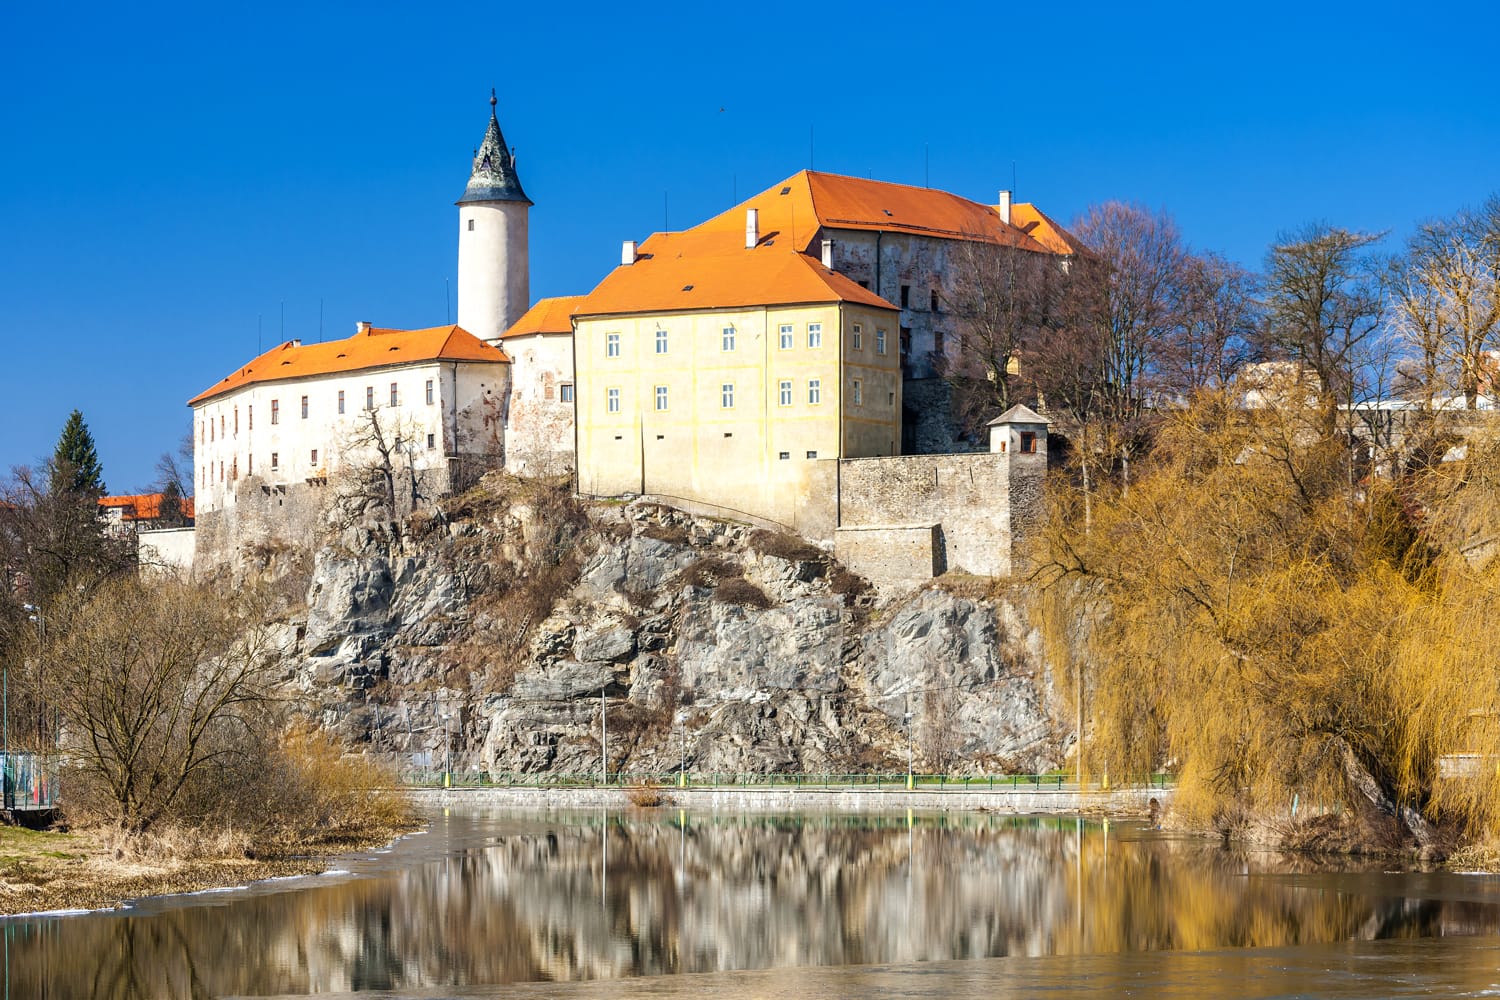 Ledec nad Sazavou Castle, Czech Republic